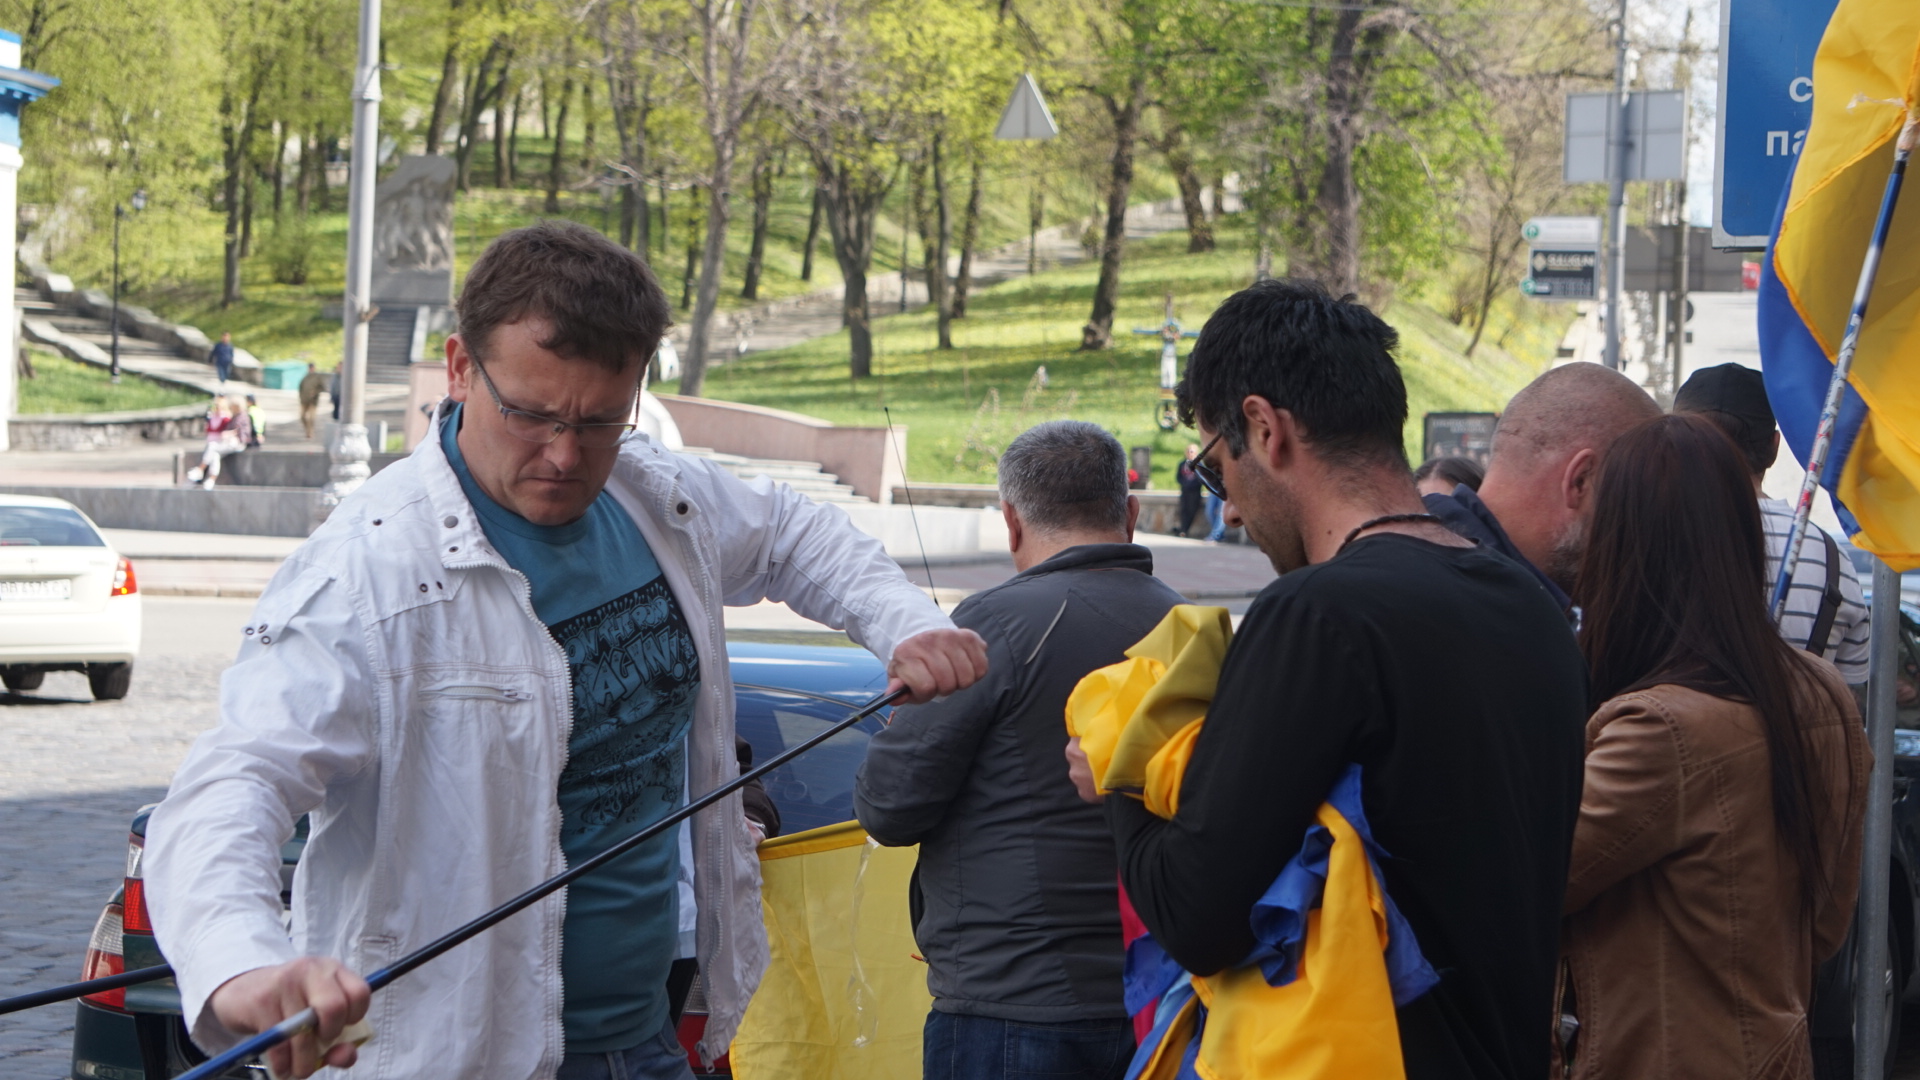 Замість Порошенка до Луценка: учасники протестного автопробігу змінили маршрут